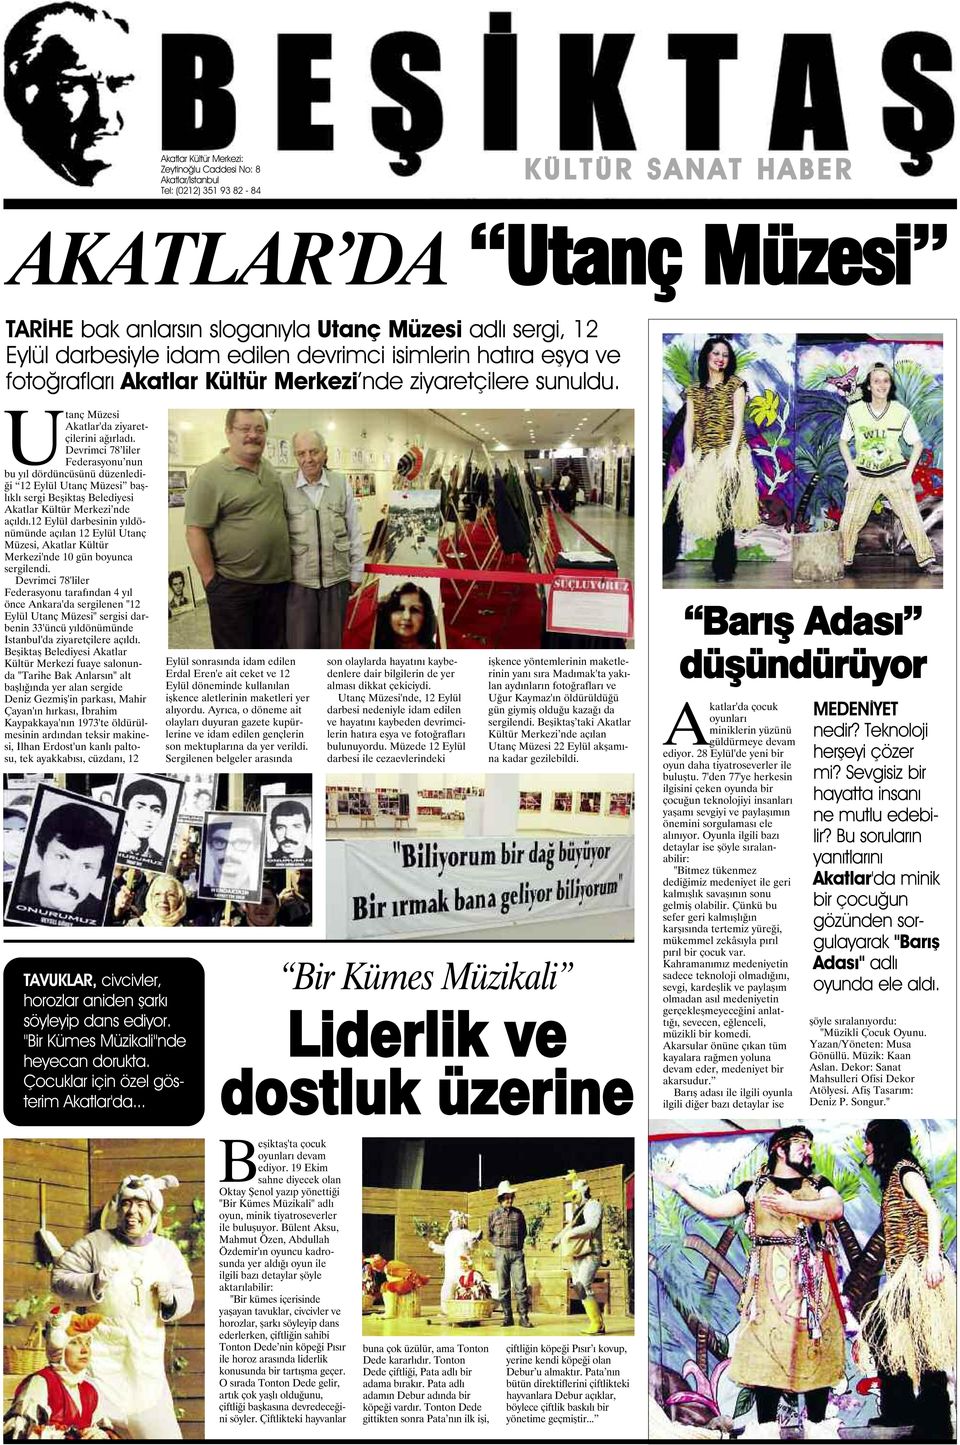 Devrimci 78 liler Federasyonu nun bu yıl dördüncüsünü düzenlediği 12 Eylül Utanç Müzesi başlıklı sergi Beşiktaş Belediyesi Akatlar Kültür Merkezi nde açıldı.